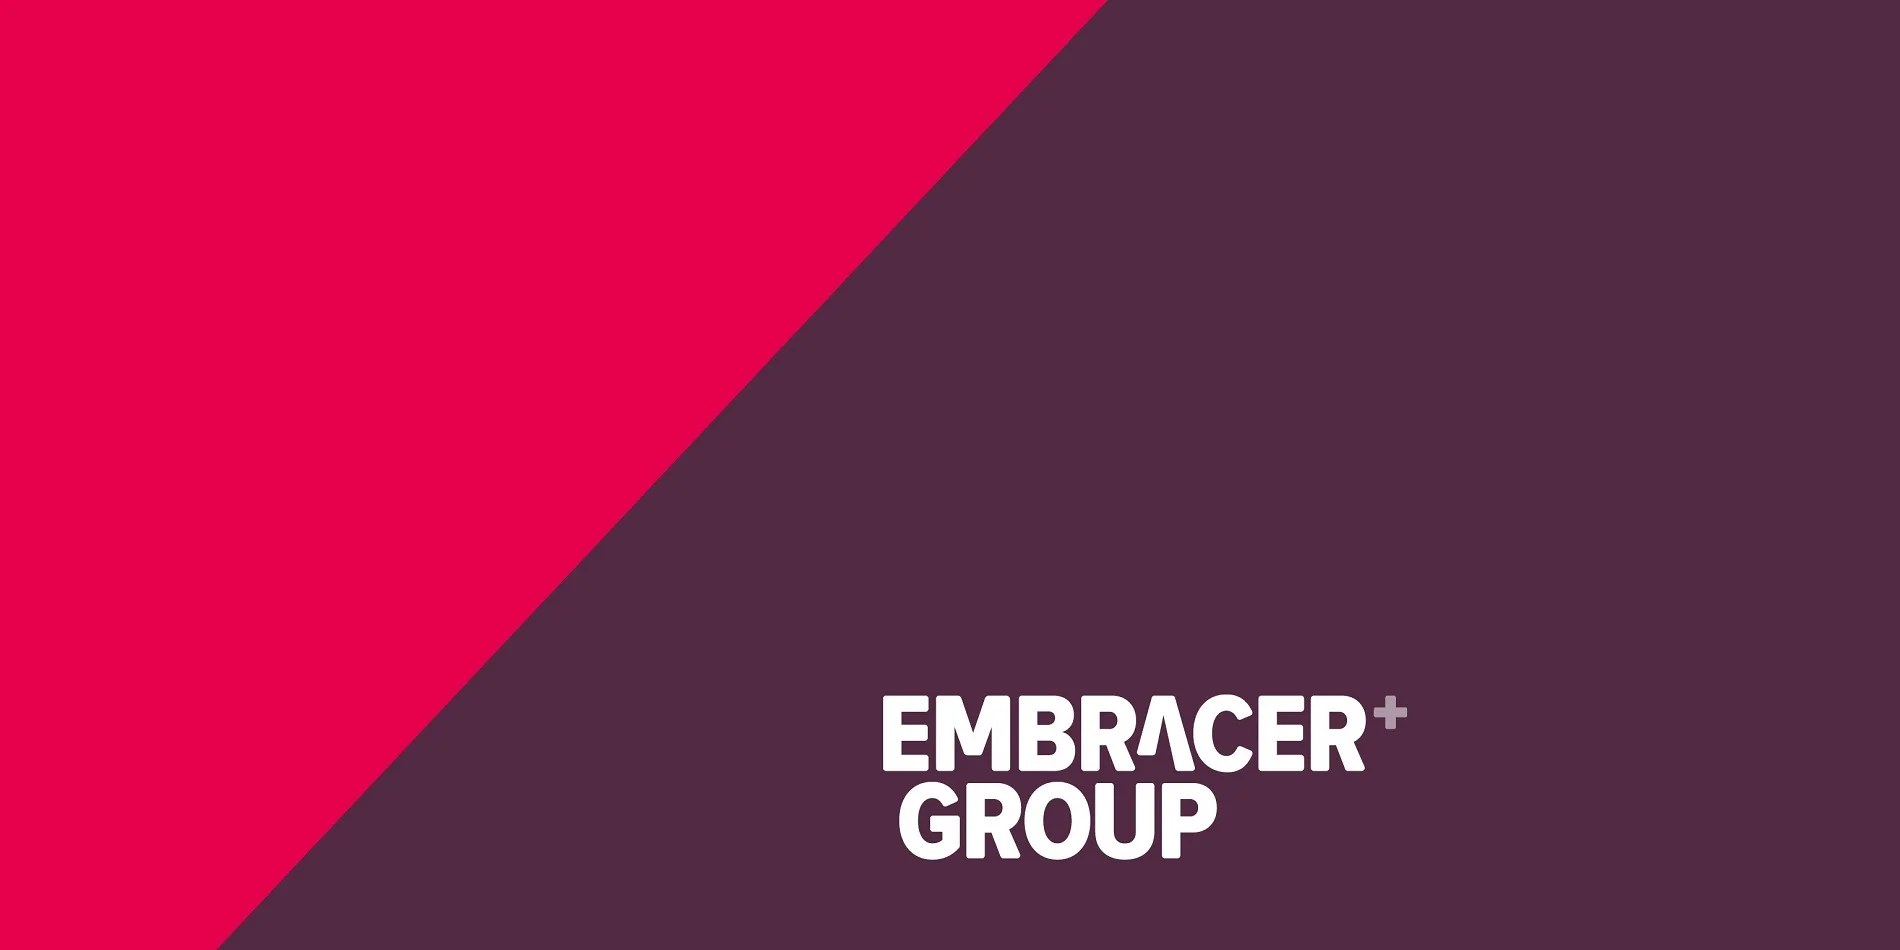 Embracer Group перестанет существовать в нынешнем виде - фото 1